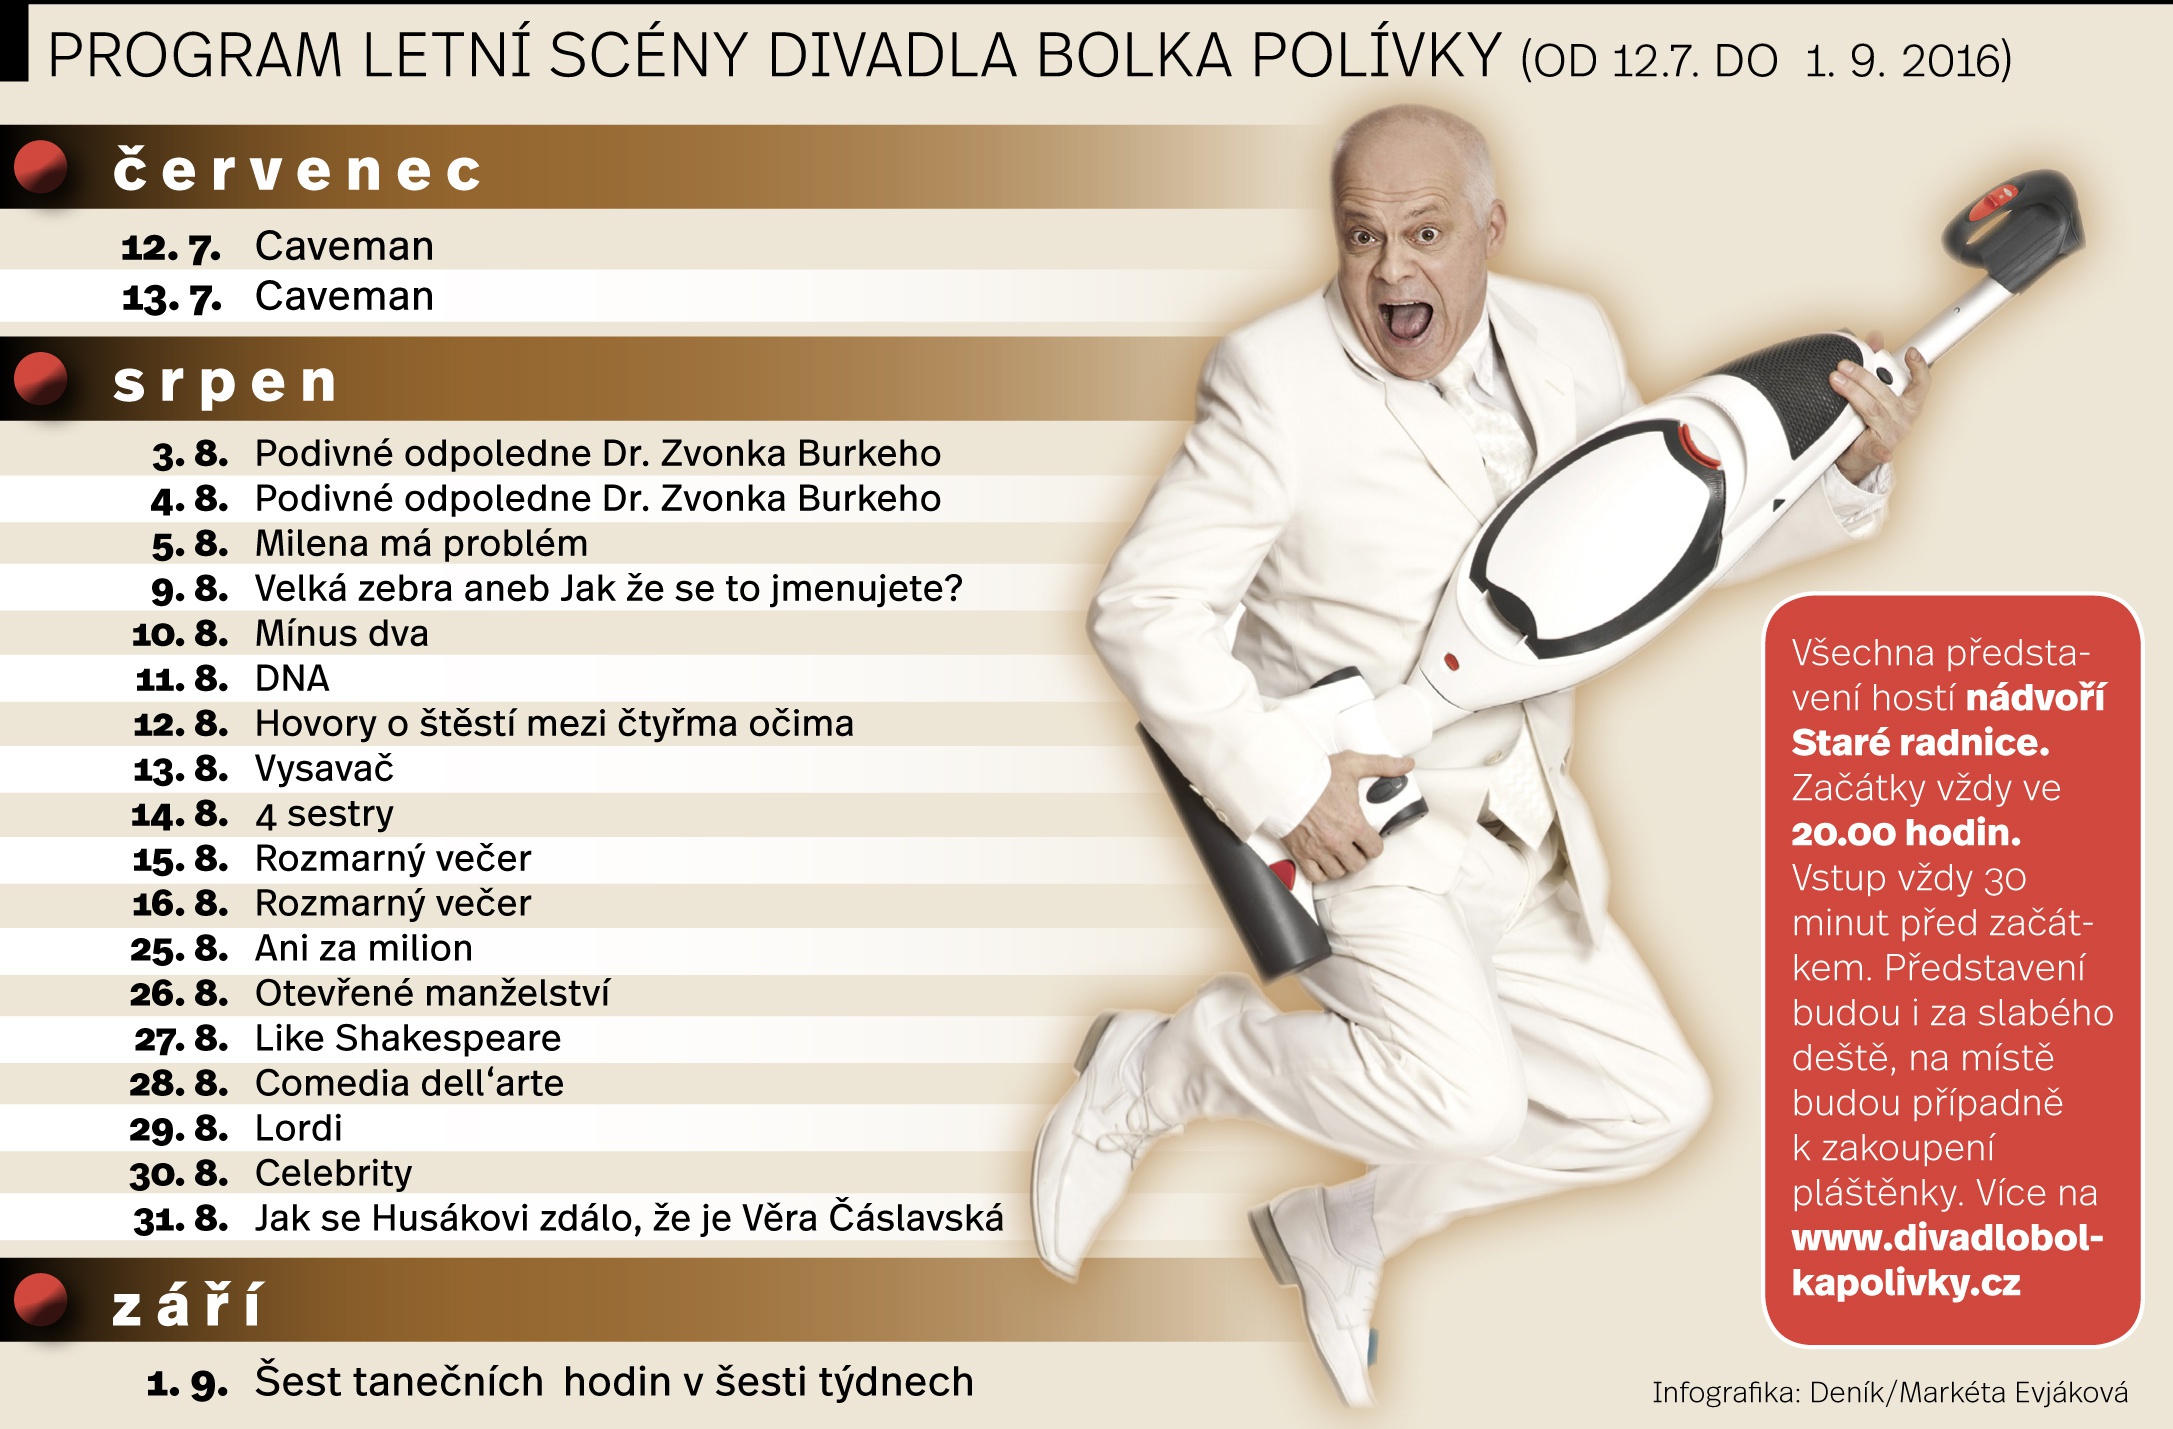 Chýlková pobaví v punkové komedii, Klepl s vysavačem - Brněnský deník